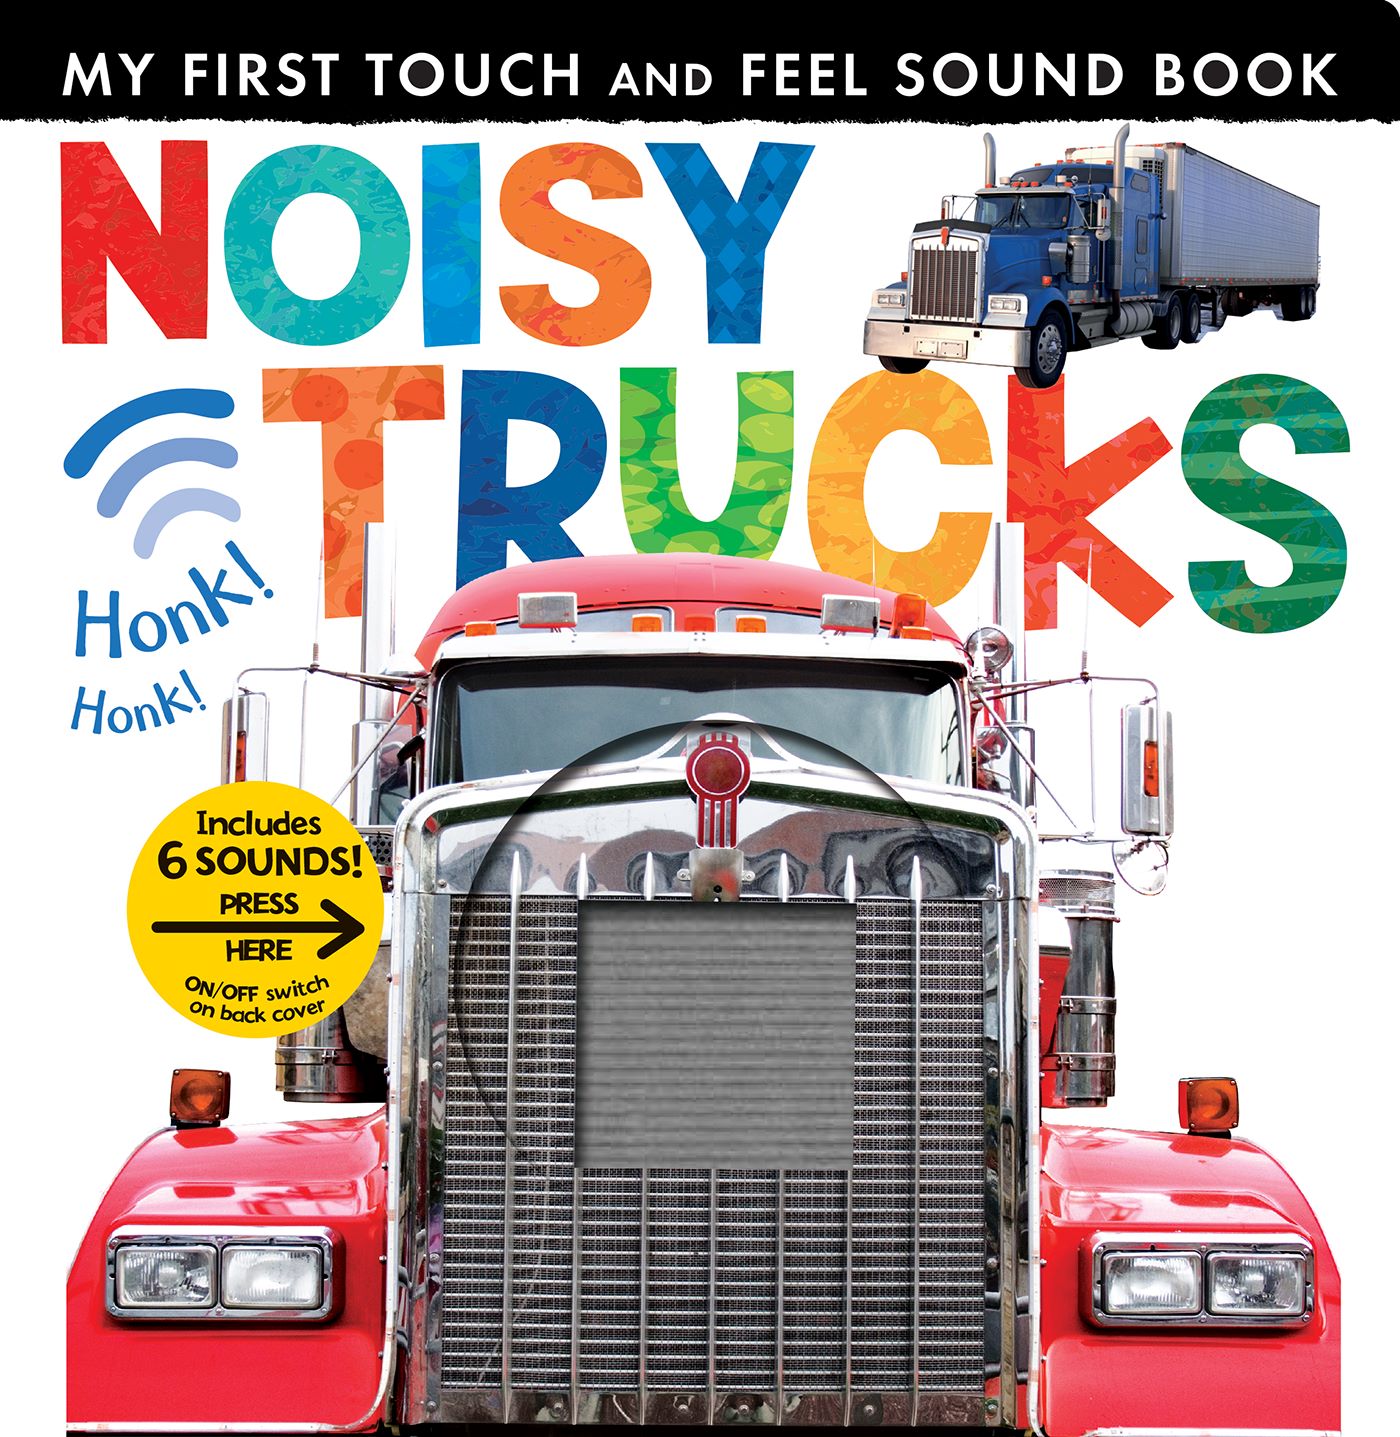 Noisy Trucks (Board Book)